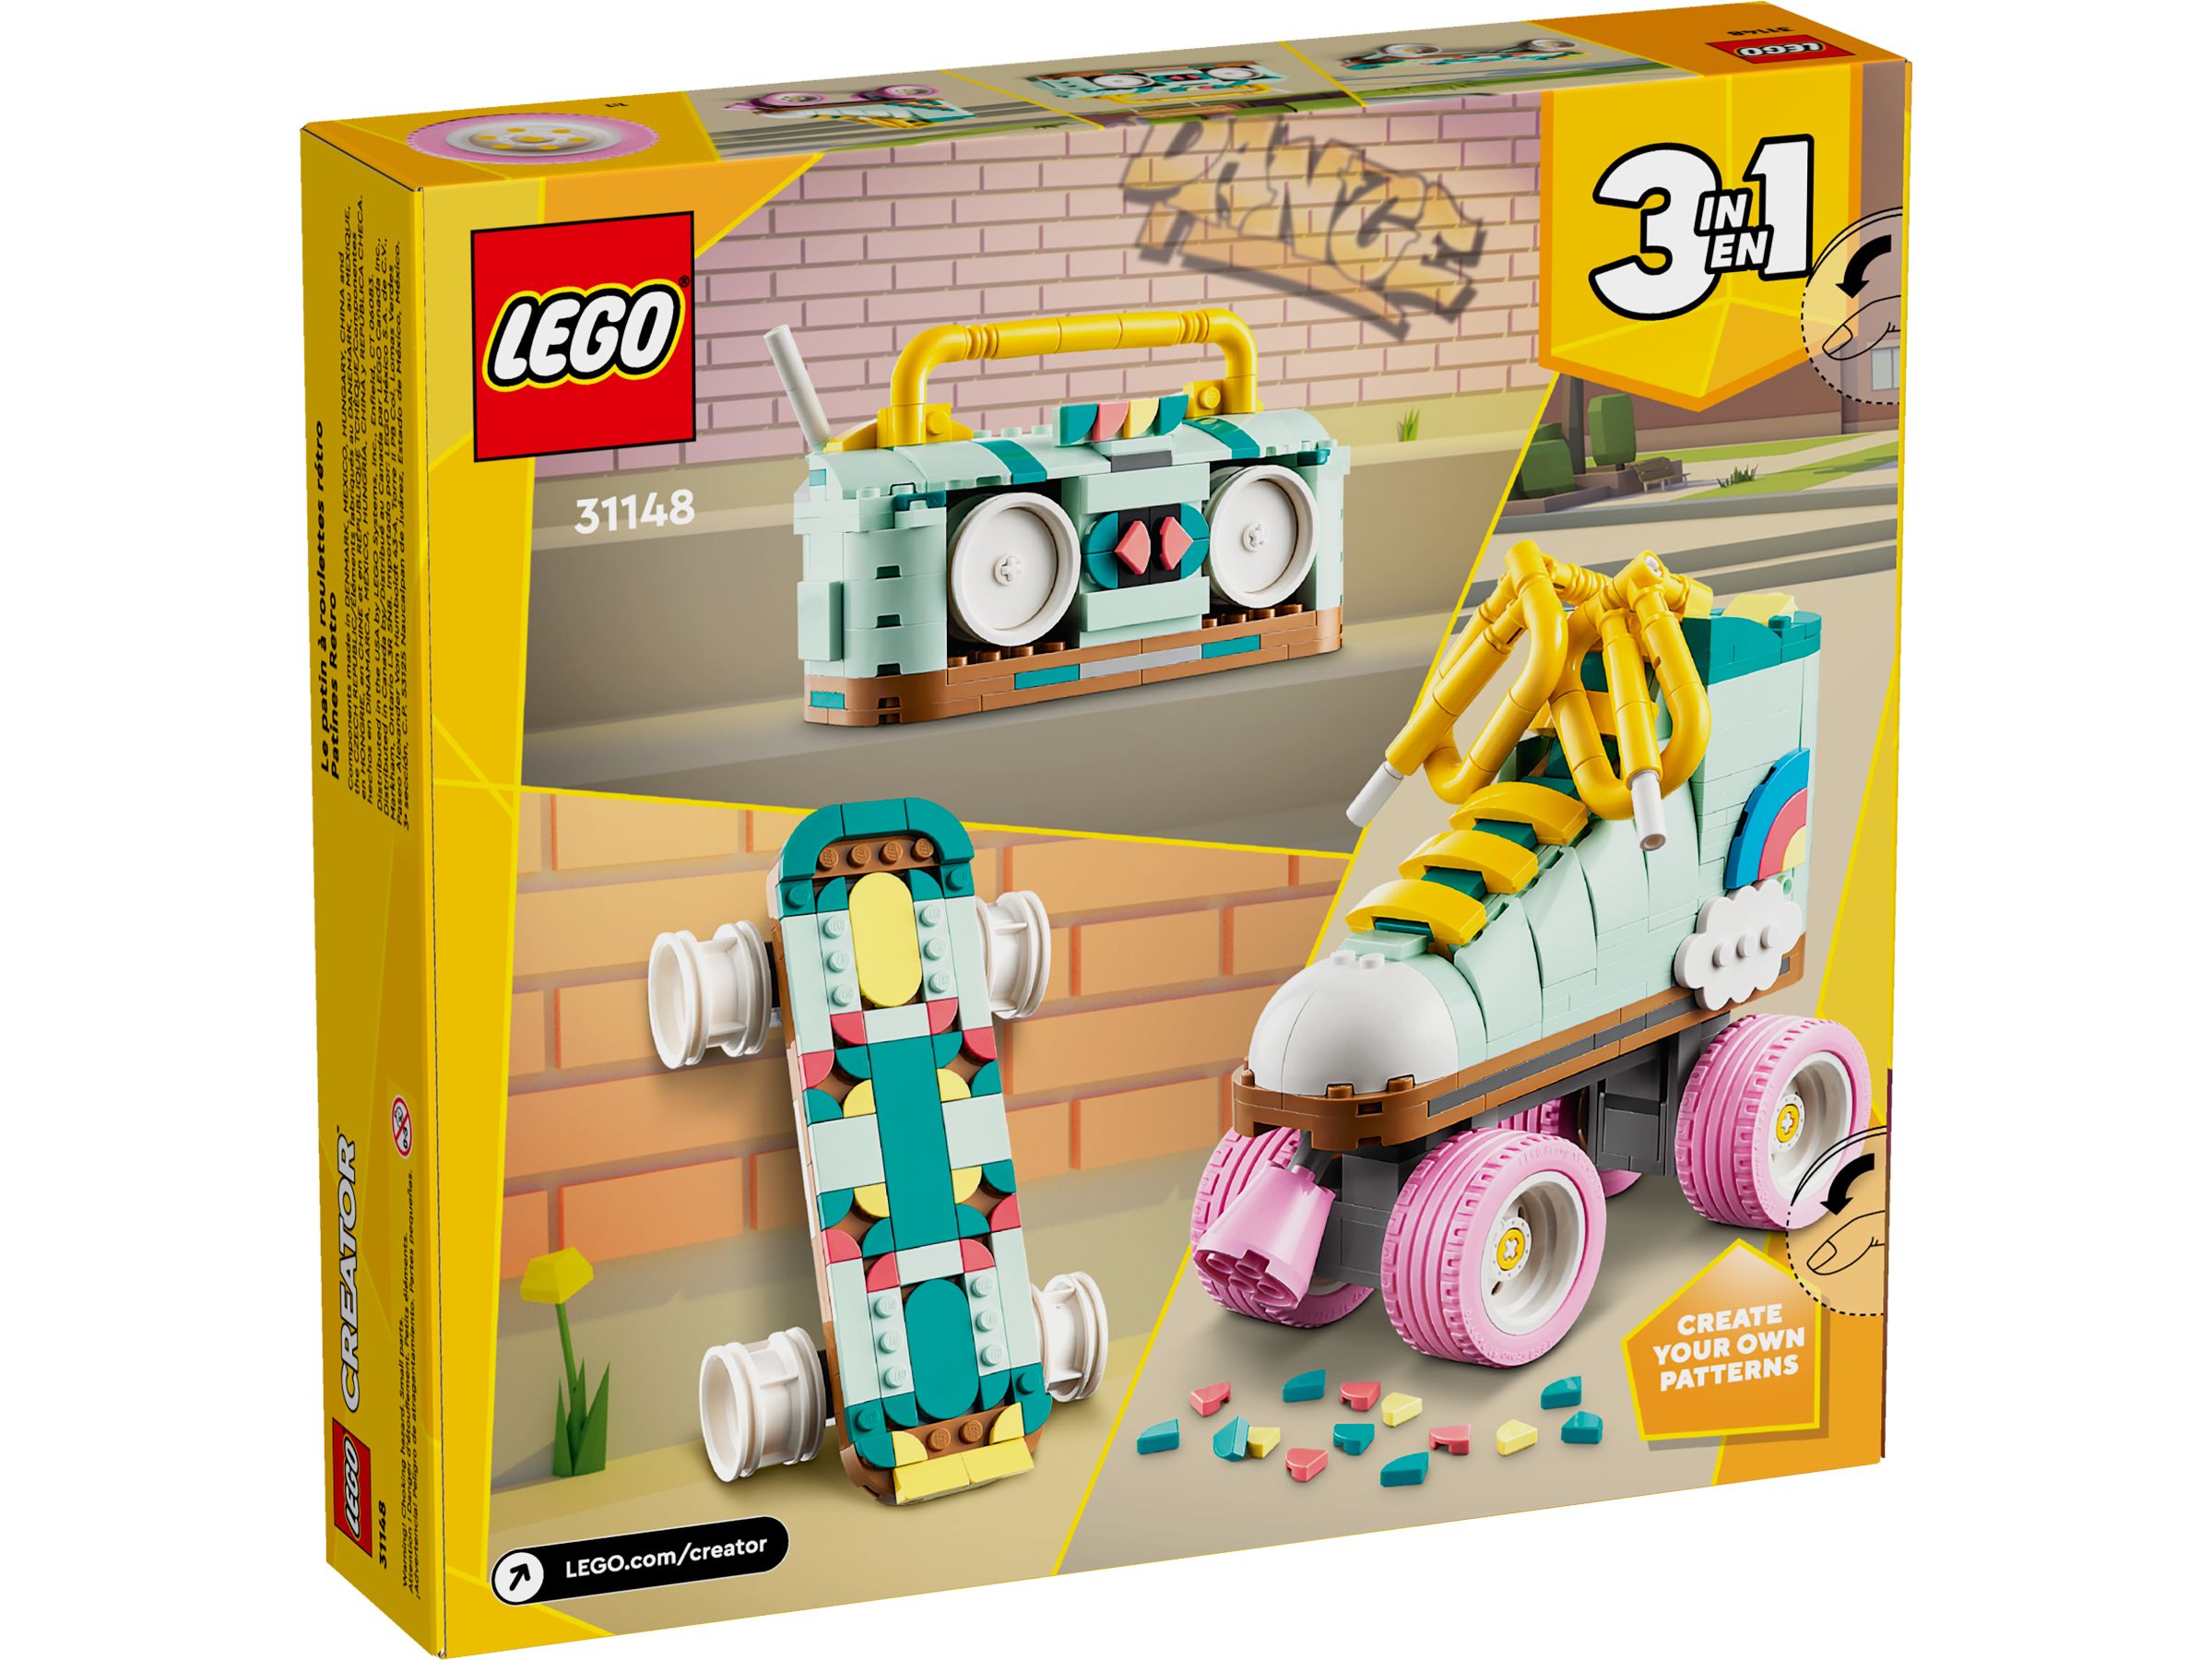 LEGO Creator 31148 Rollschuh LEGO_31148_alt7.jpg